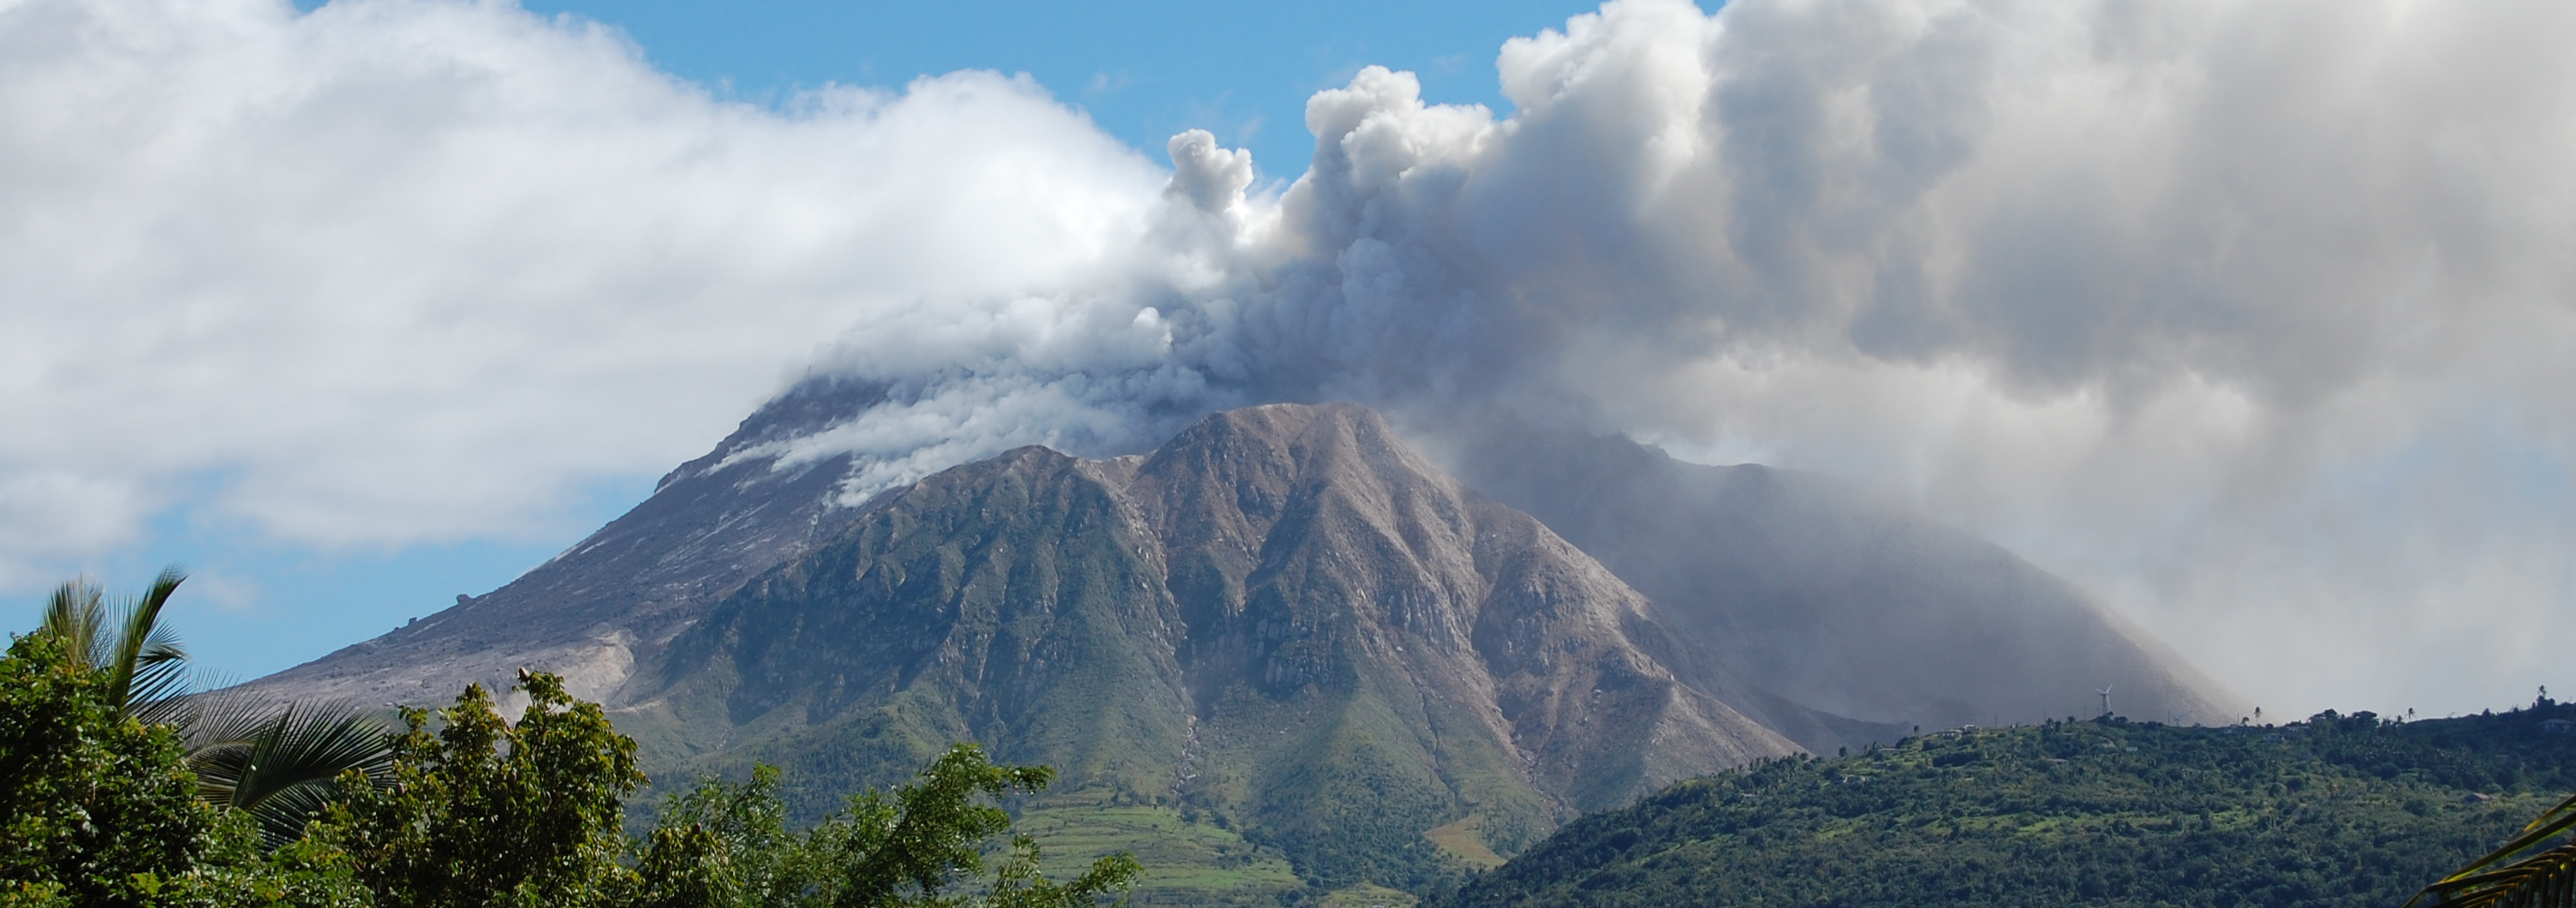 Dampfender Vulkan Soufriere auf Montserrat in der Karibik